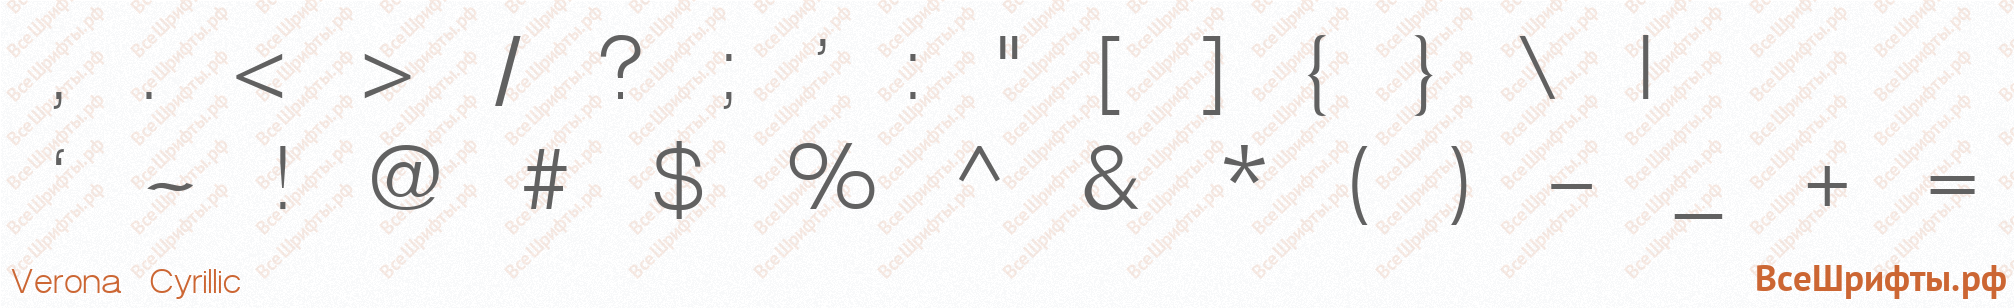 Шрифт Verona Cyrillic со знаками препинания и пунктуации